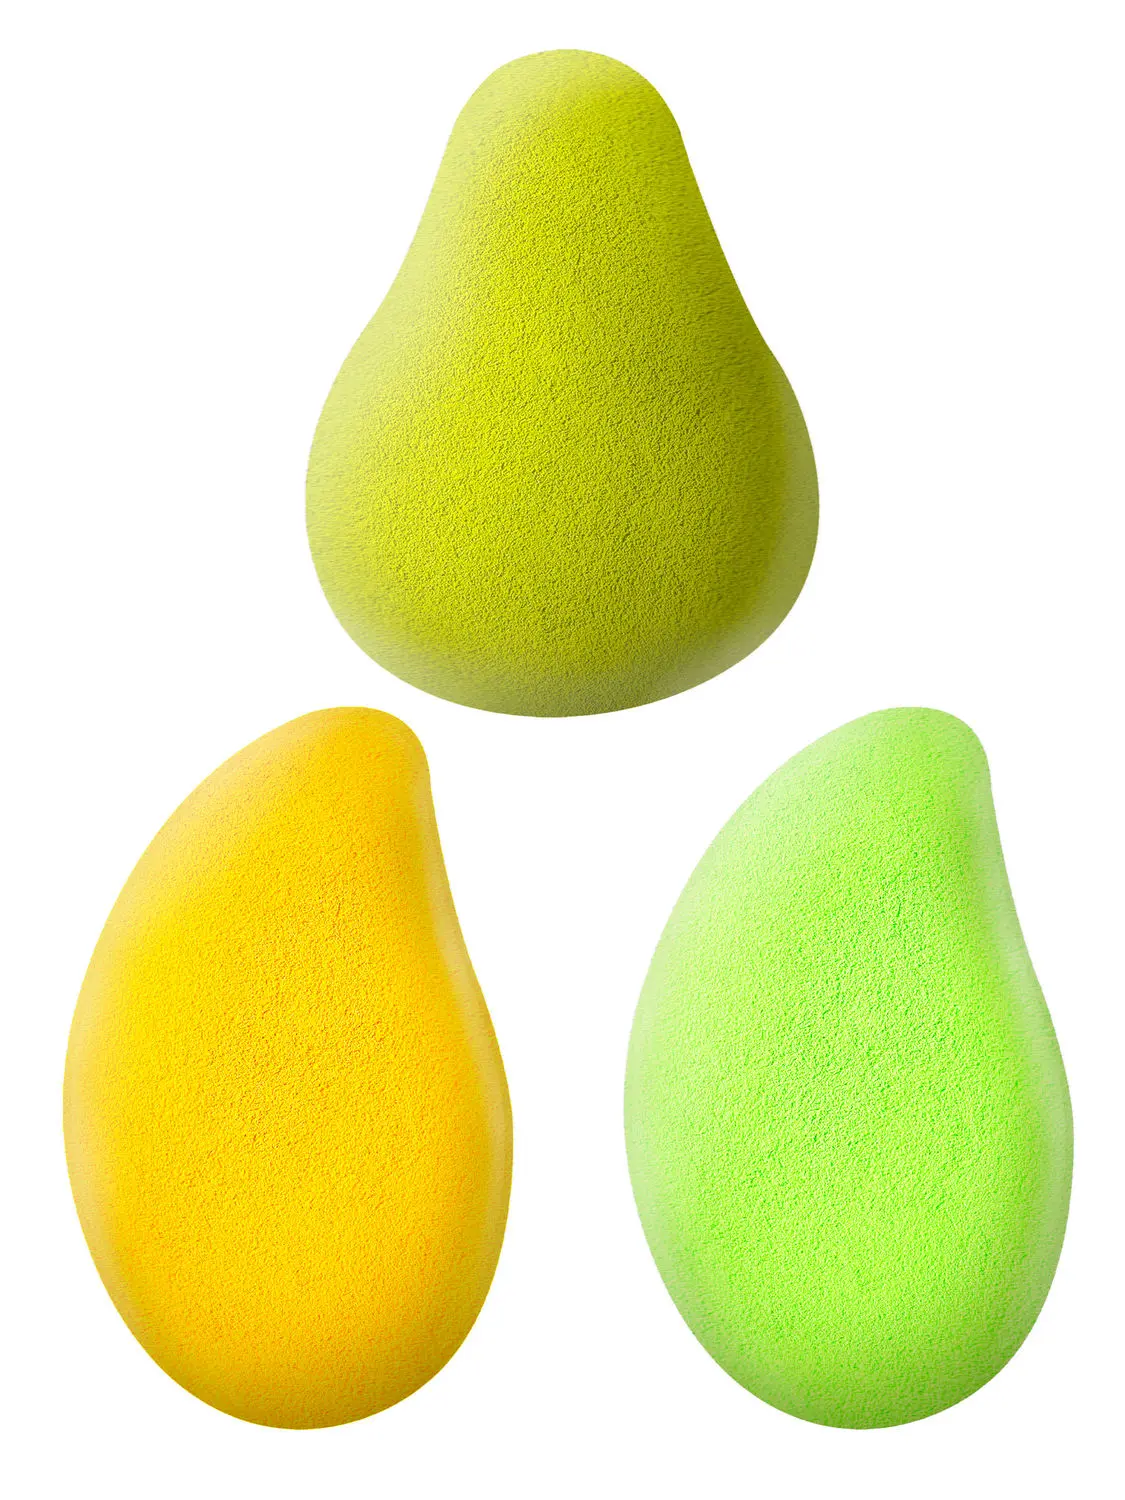 AY Makeup Sponge Puff (Colour May Vary) - Pack of 3, Mango and Avacoda Shapes